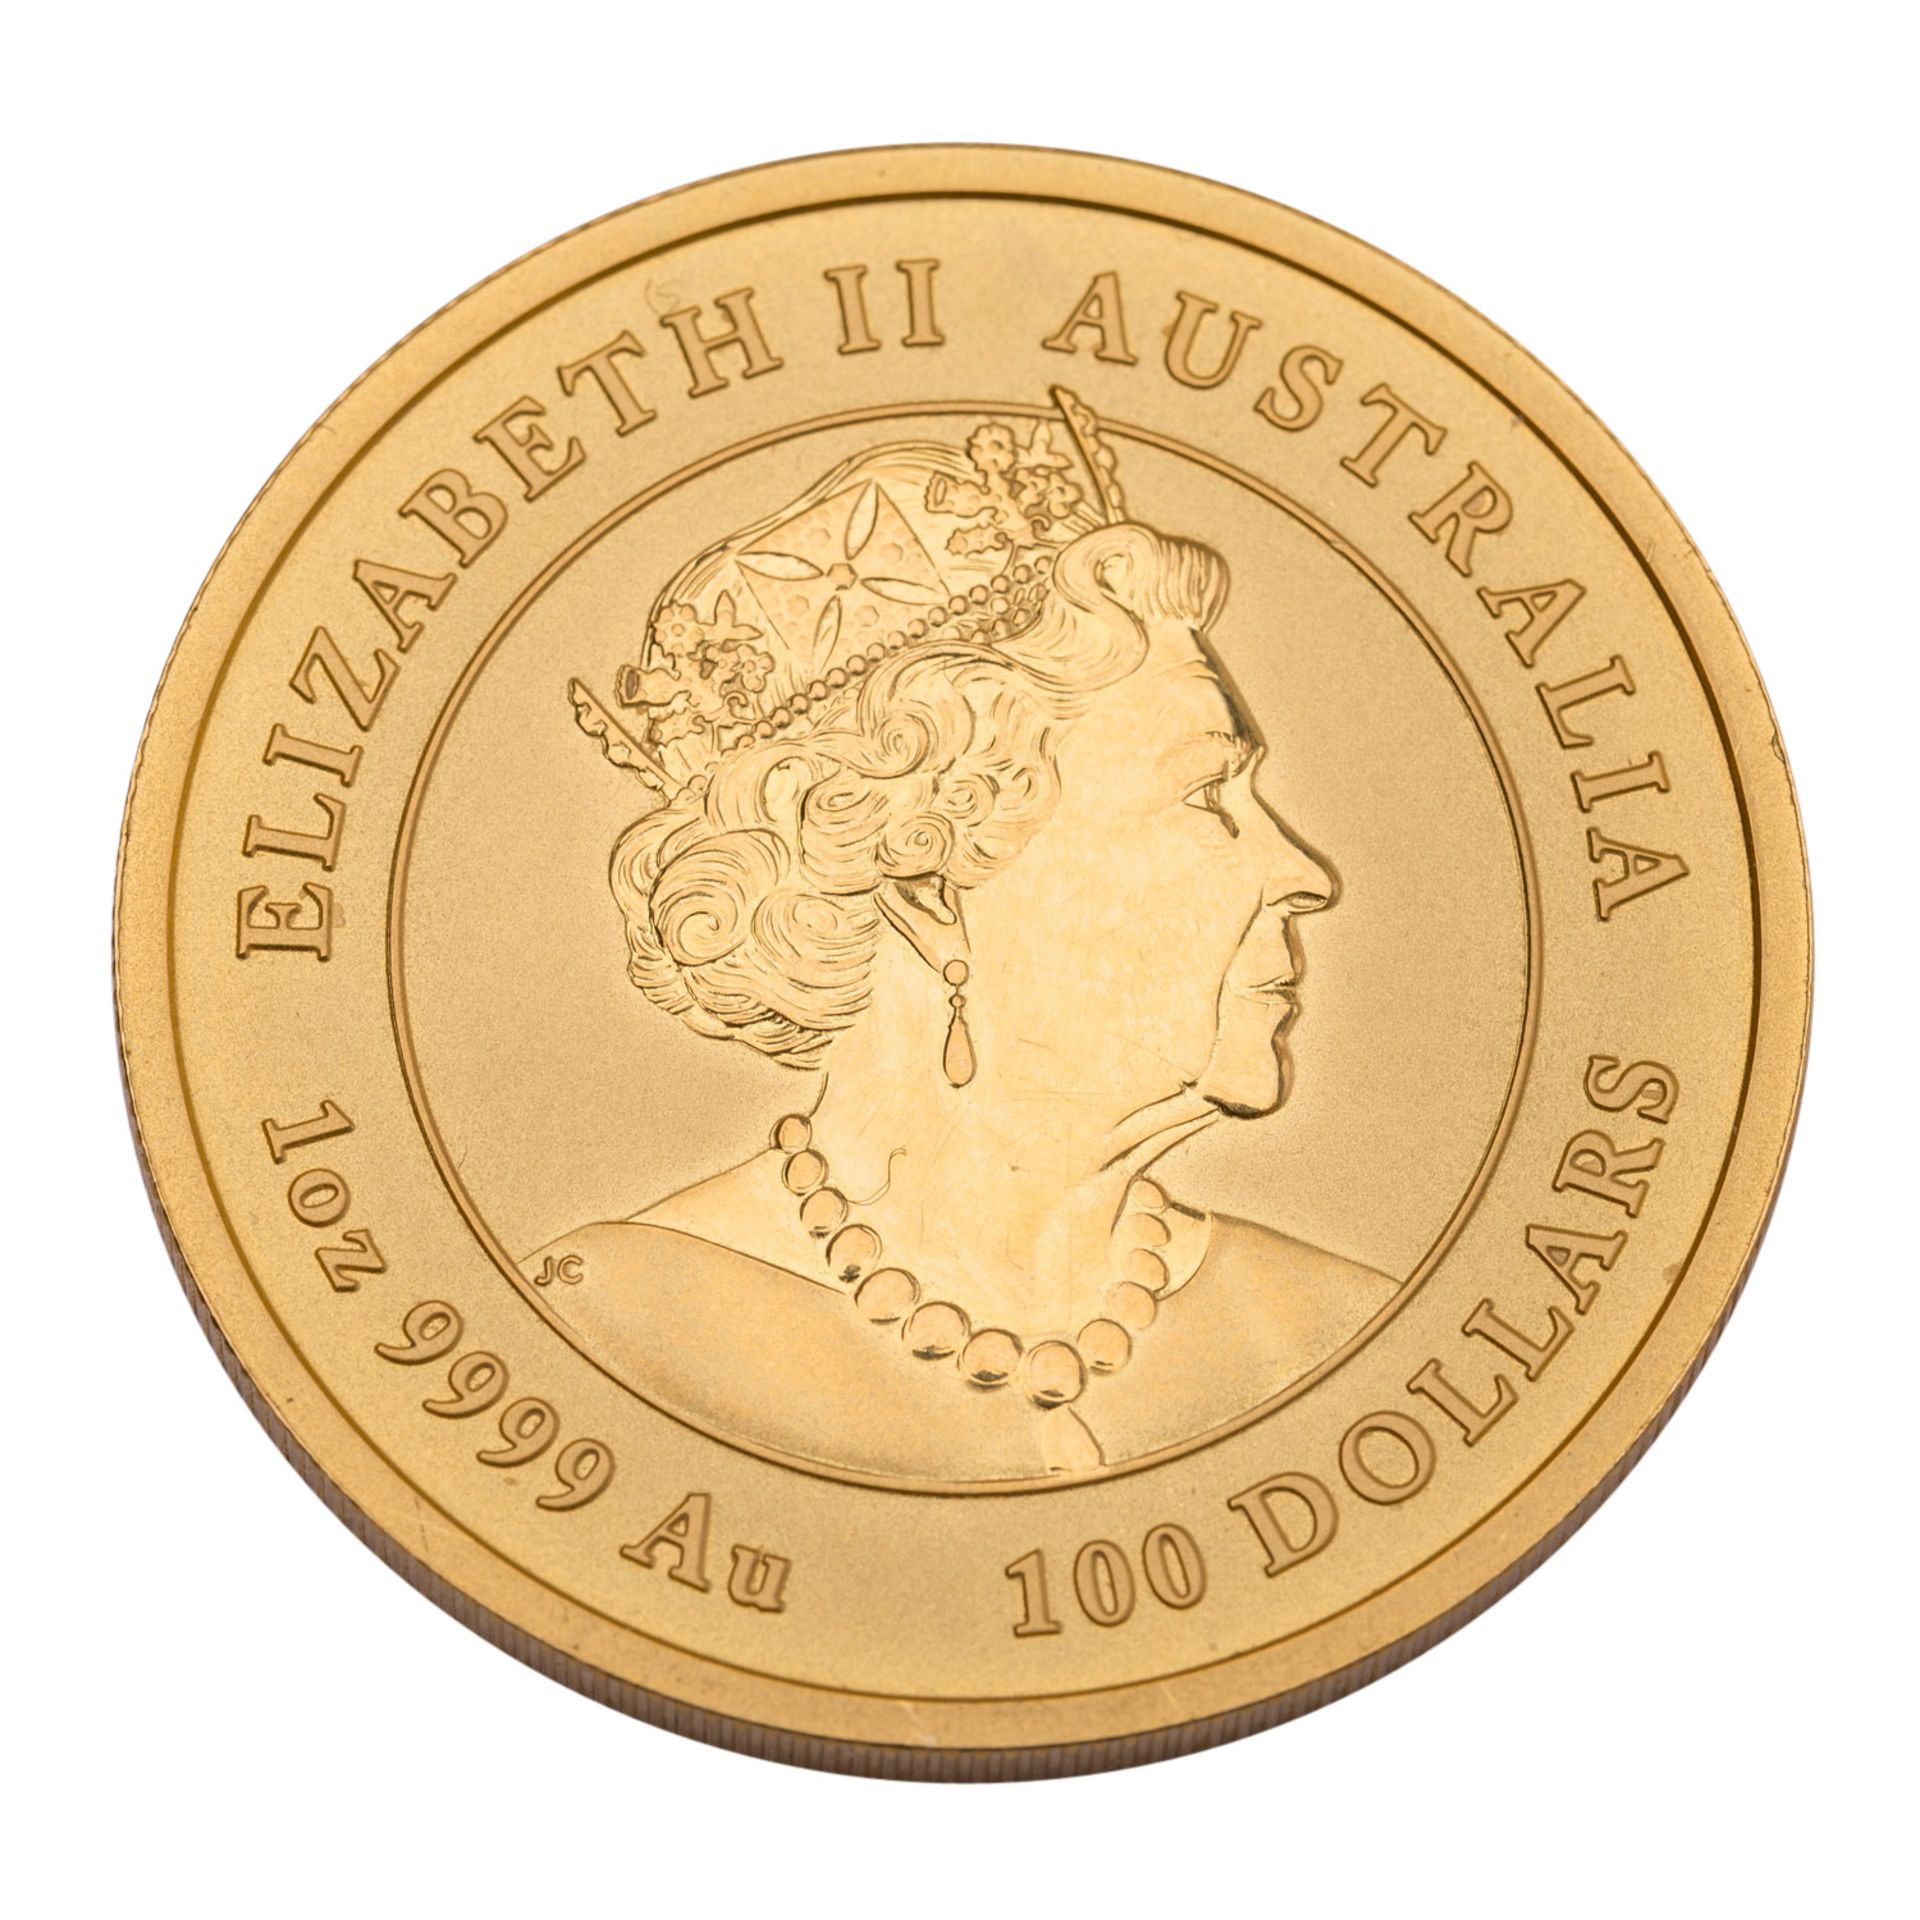 Australien - 100 Dollars 2022, Jahr des Tigers, Lunar III, GOLD, - Bild 2 aus 2